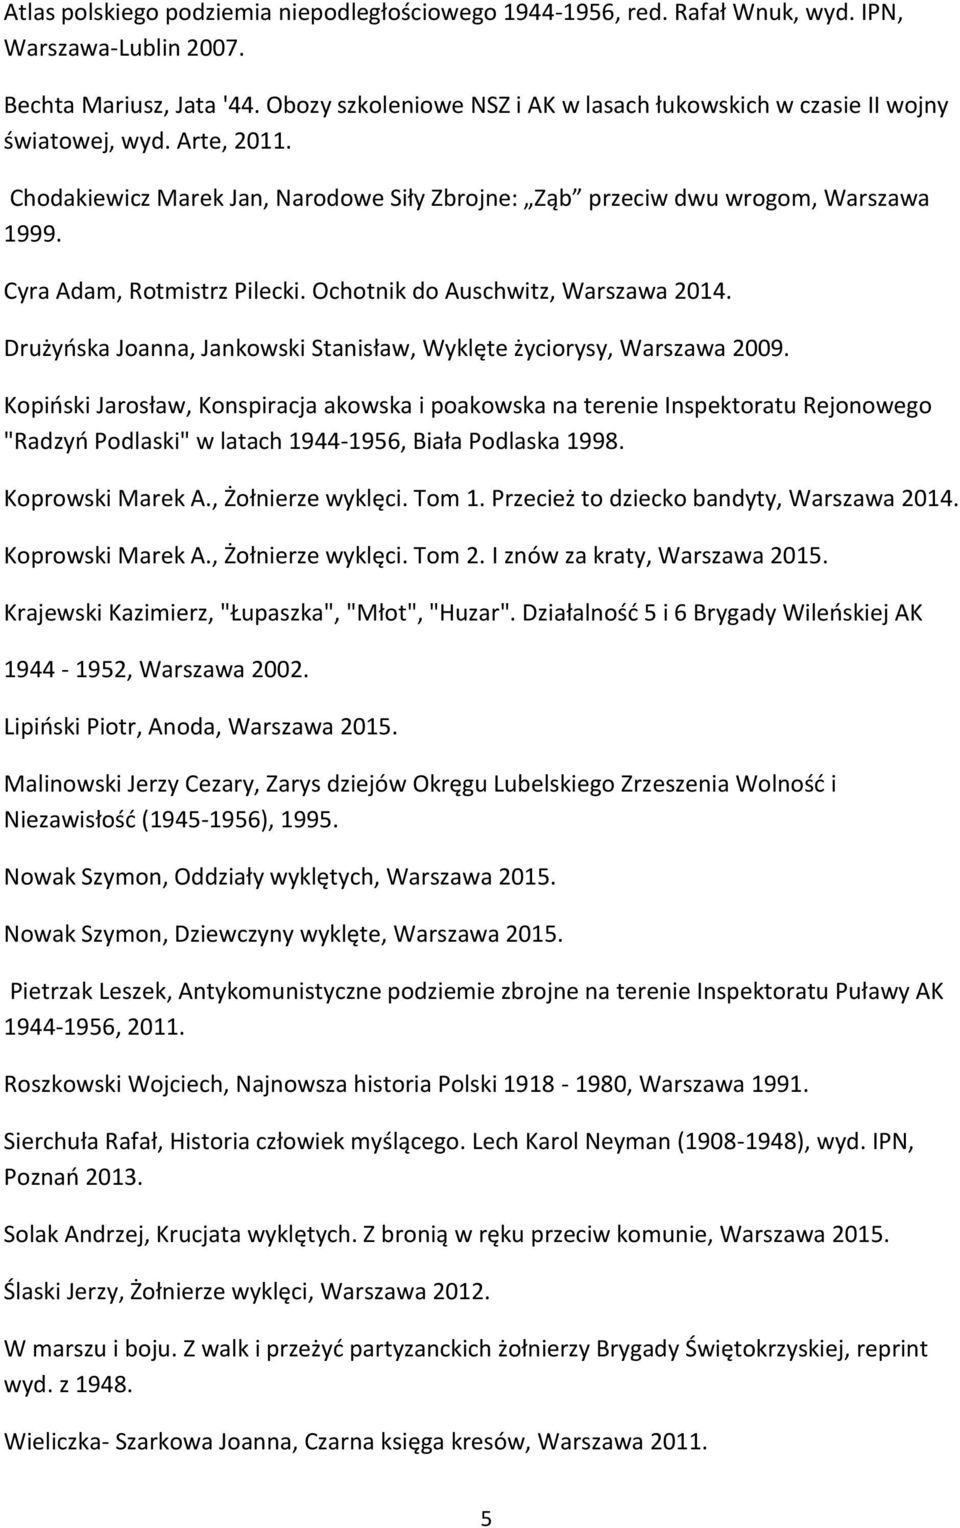 Cyra Adam, Rotmistrz Pilecki. Ochotnik do Auschwitz, Warszawa 2014. Drużyńska Joanna, Jankowski Stanisław, Wyklęte życiorysy, Warszawa 2009.